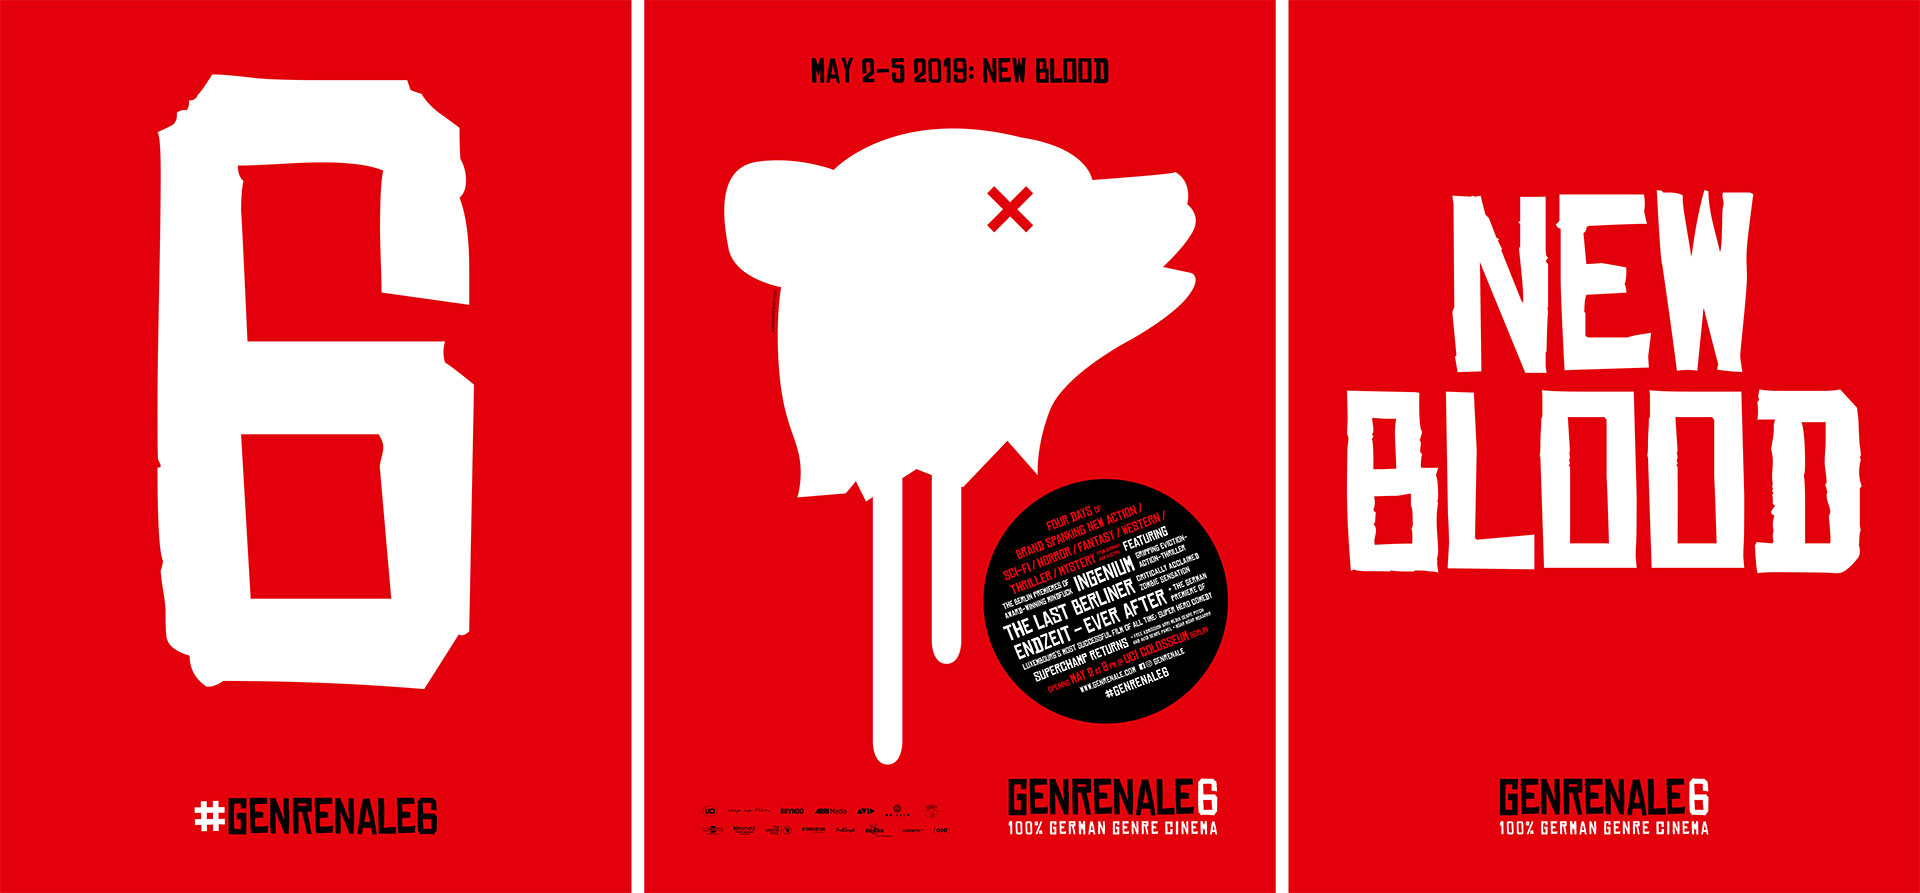 GENRENALE 2019: drei Poster der Veranstaltung. Auf roten Hintergründen befinden sich die Zahl "6" (Poster 1), das GENRENALE-Bärenlogo (Poster 2) und das 2019er-Motto "New Blood" (Poster 3) in weißer Farbe.